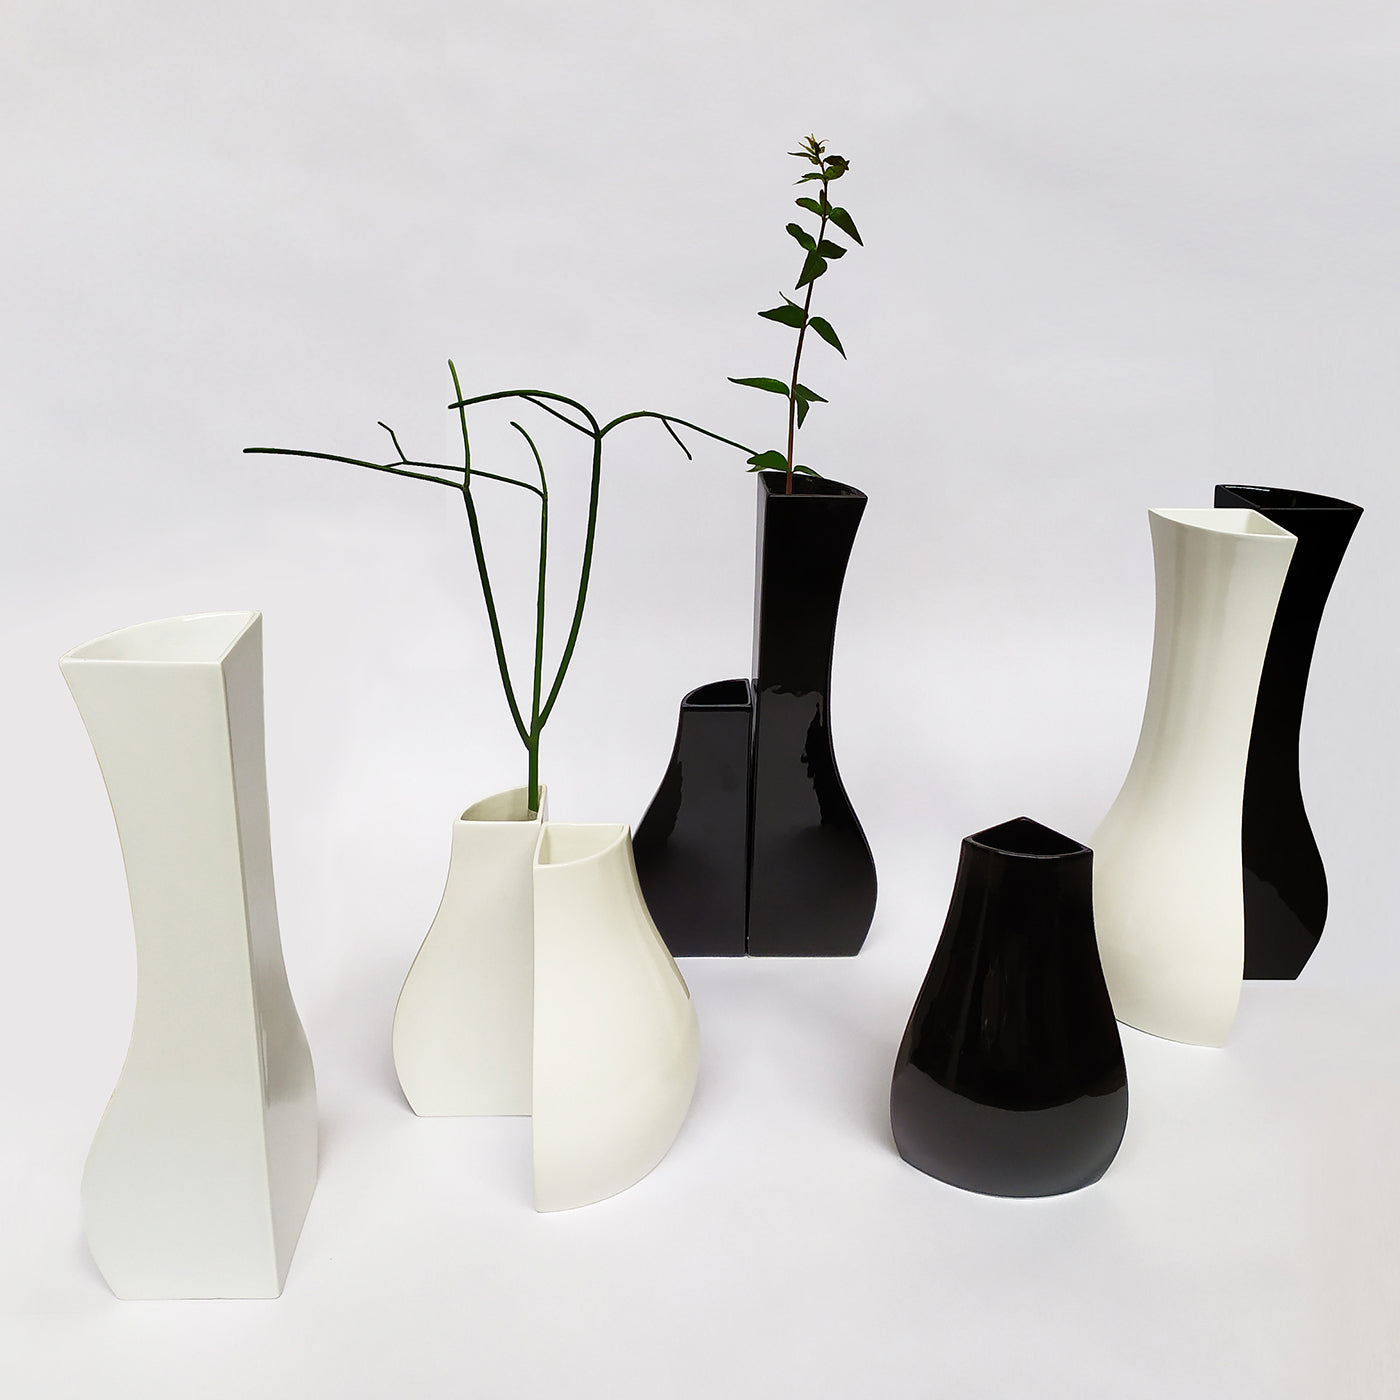 Vasovasi Tall Glossy Black Vase - Alternative view 1